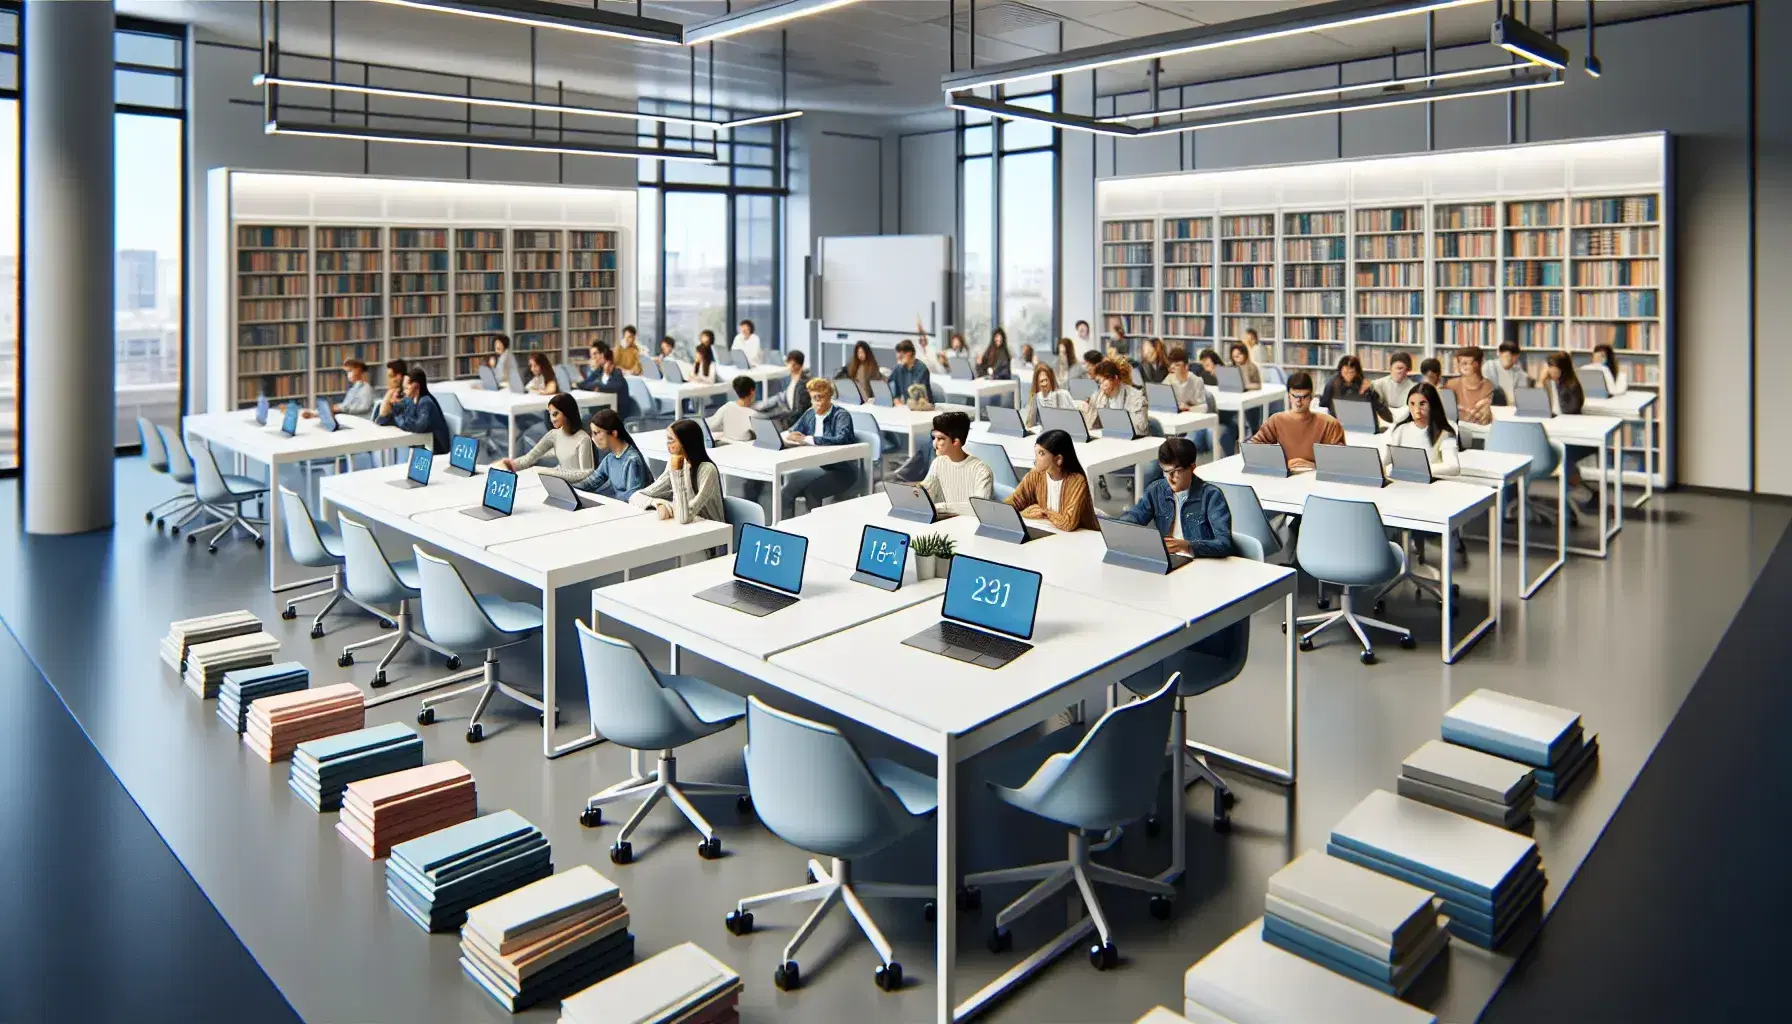 Aula escolar moderna y luminosa con mesas blancas, sillas ergonómicas azules, dispositivos electrónicos, estudiantes diversos y pizarra blanca.